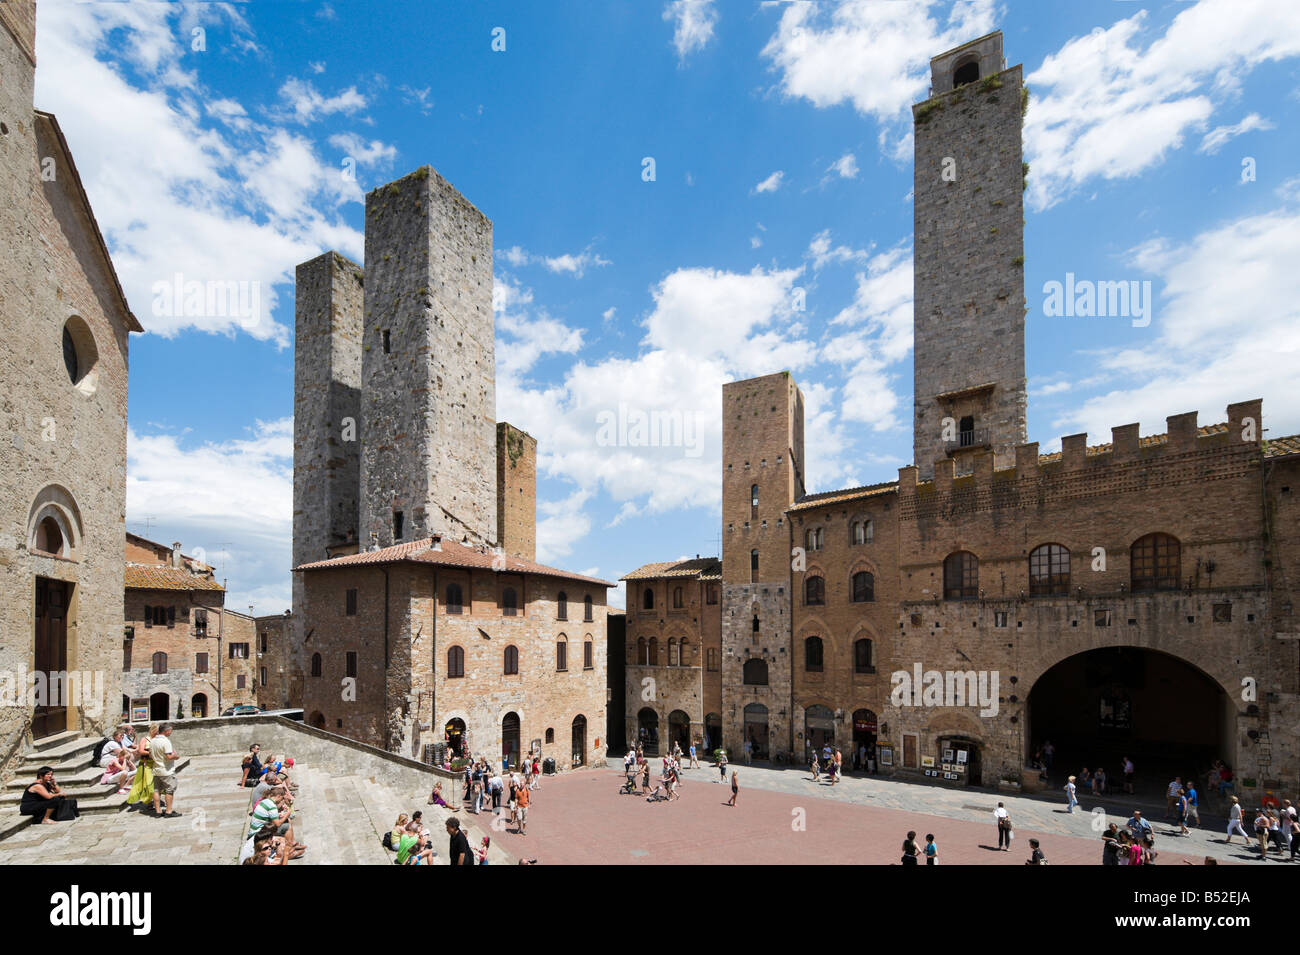 Vista della Piazza Duomo e torri storiche da fuori della Collegiata (Duomo), San Gimignano, Toscana, Italia Foto Stock